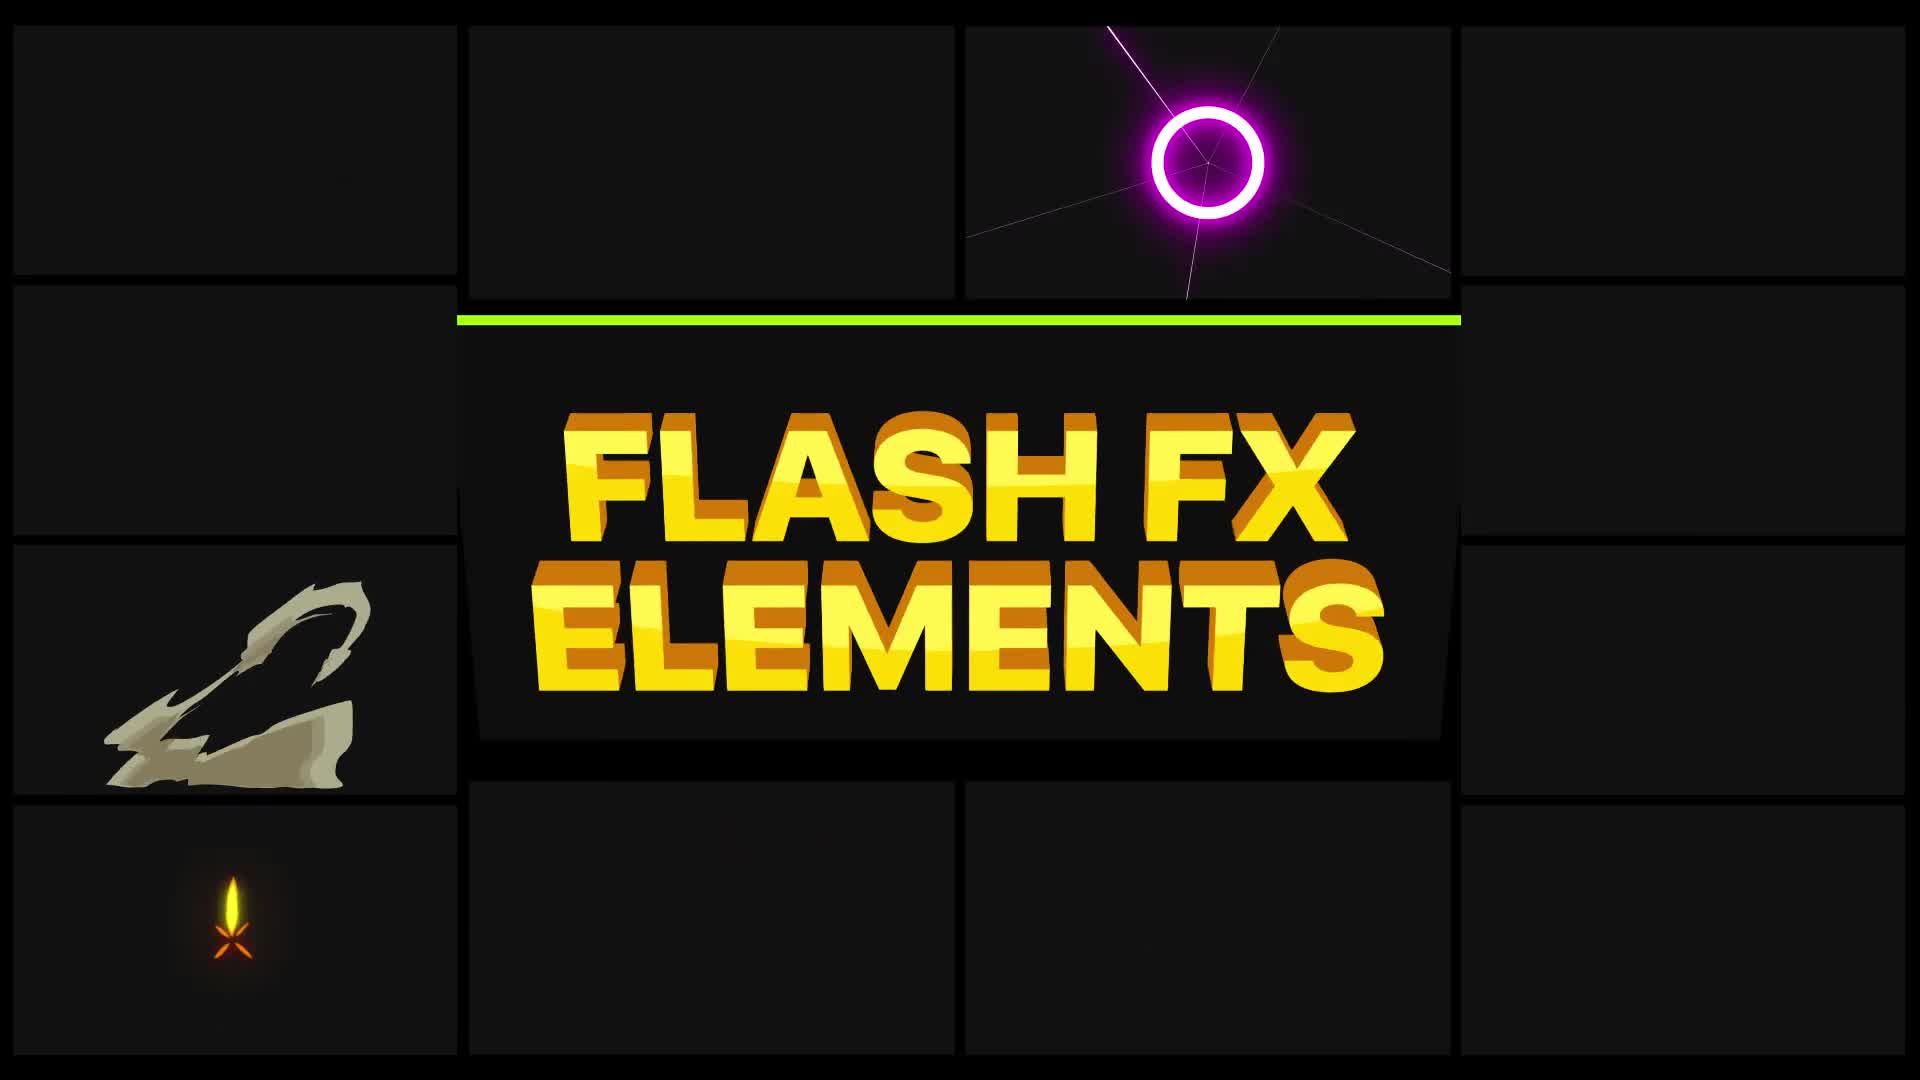 Flash FX Pack | Premiere Pro MOGRT Videohive 27583643 Premiere Pro Image 1